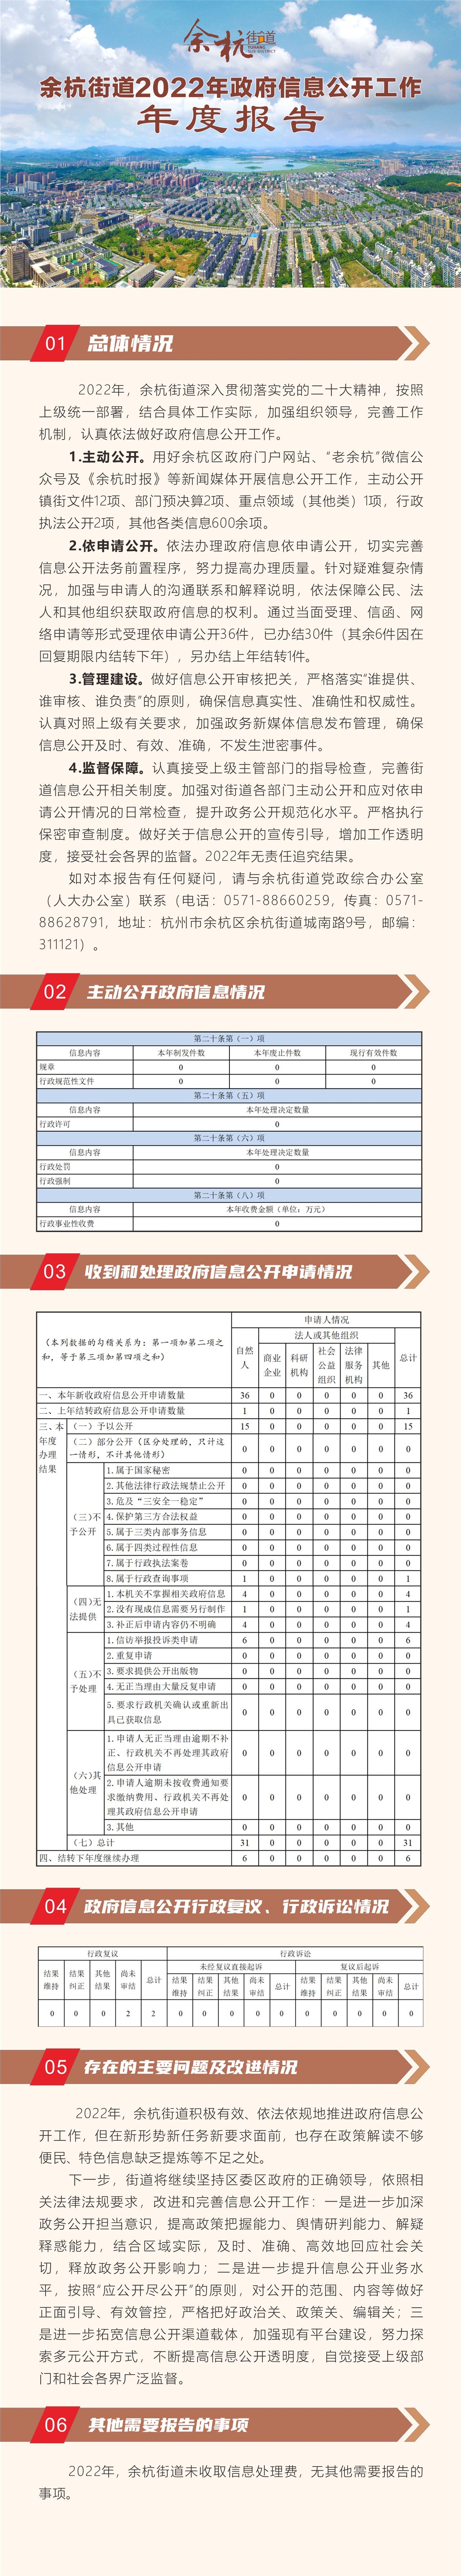 余杭街道办事处2022年政府信息公开工作年度报告.jpg